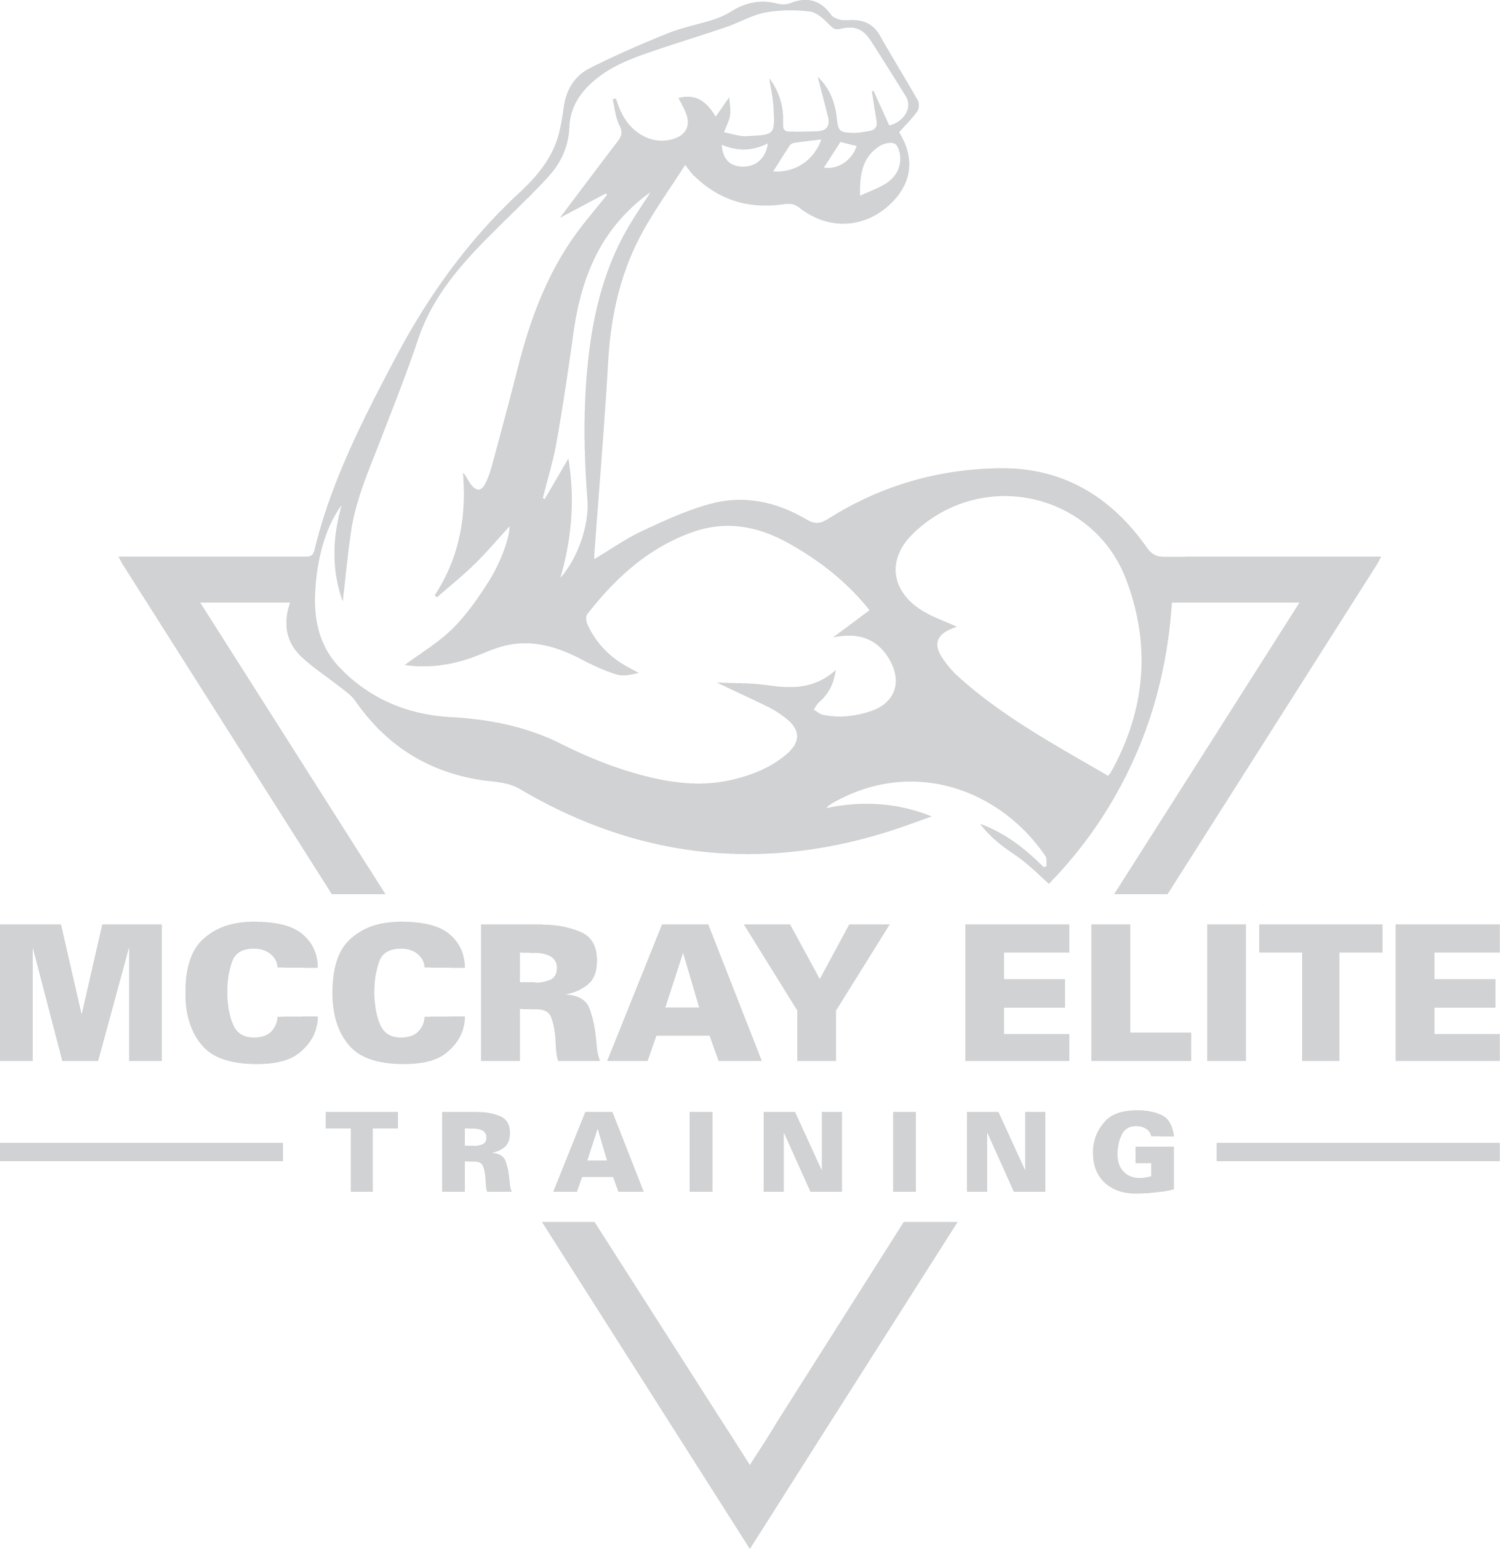 McCray Elite Training